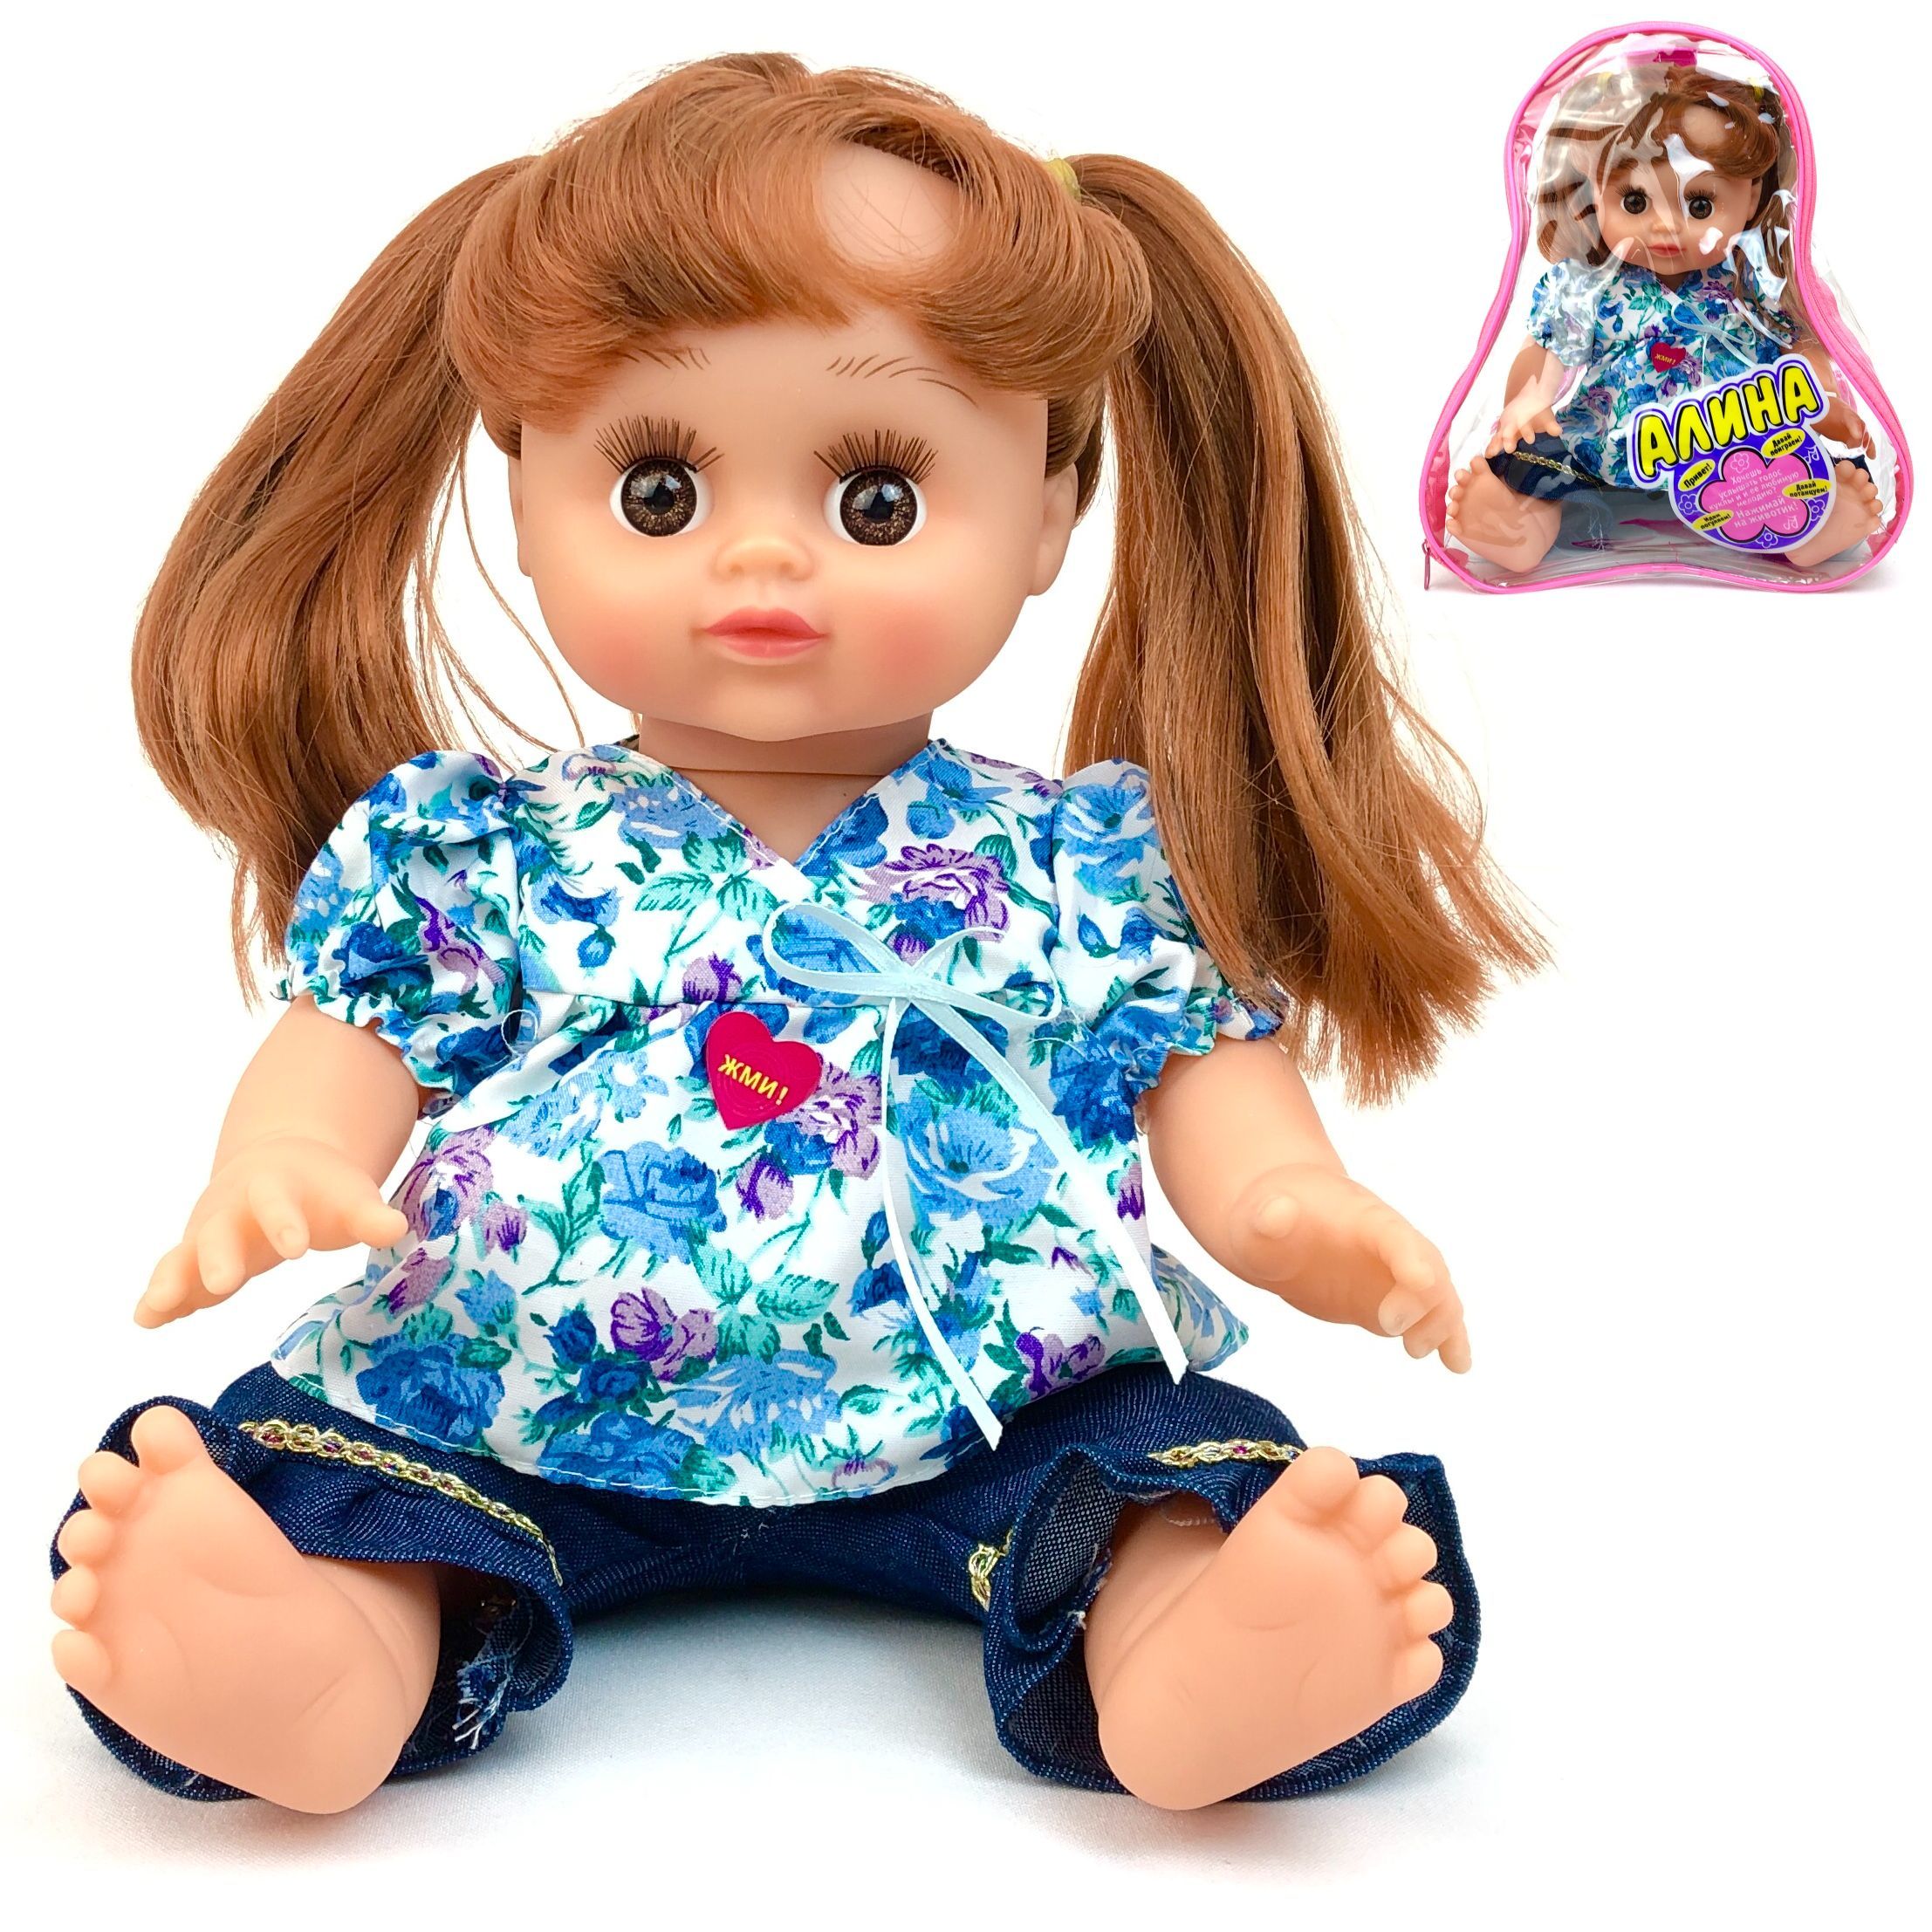 Интерактивная кукла PLAYSMART Алина 5296, говорящая, поет песню про маму, 33 см